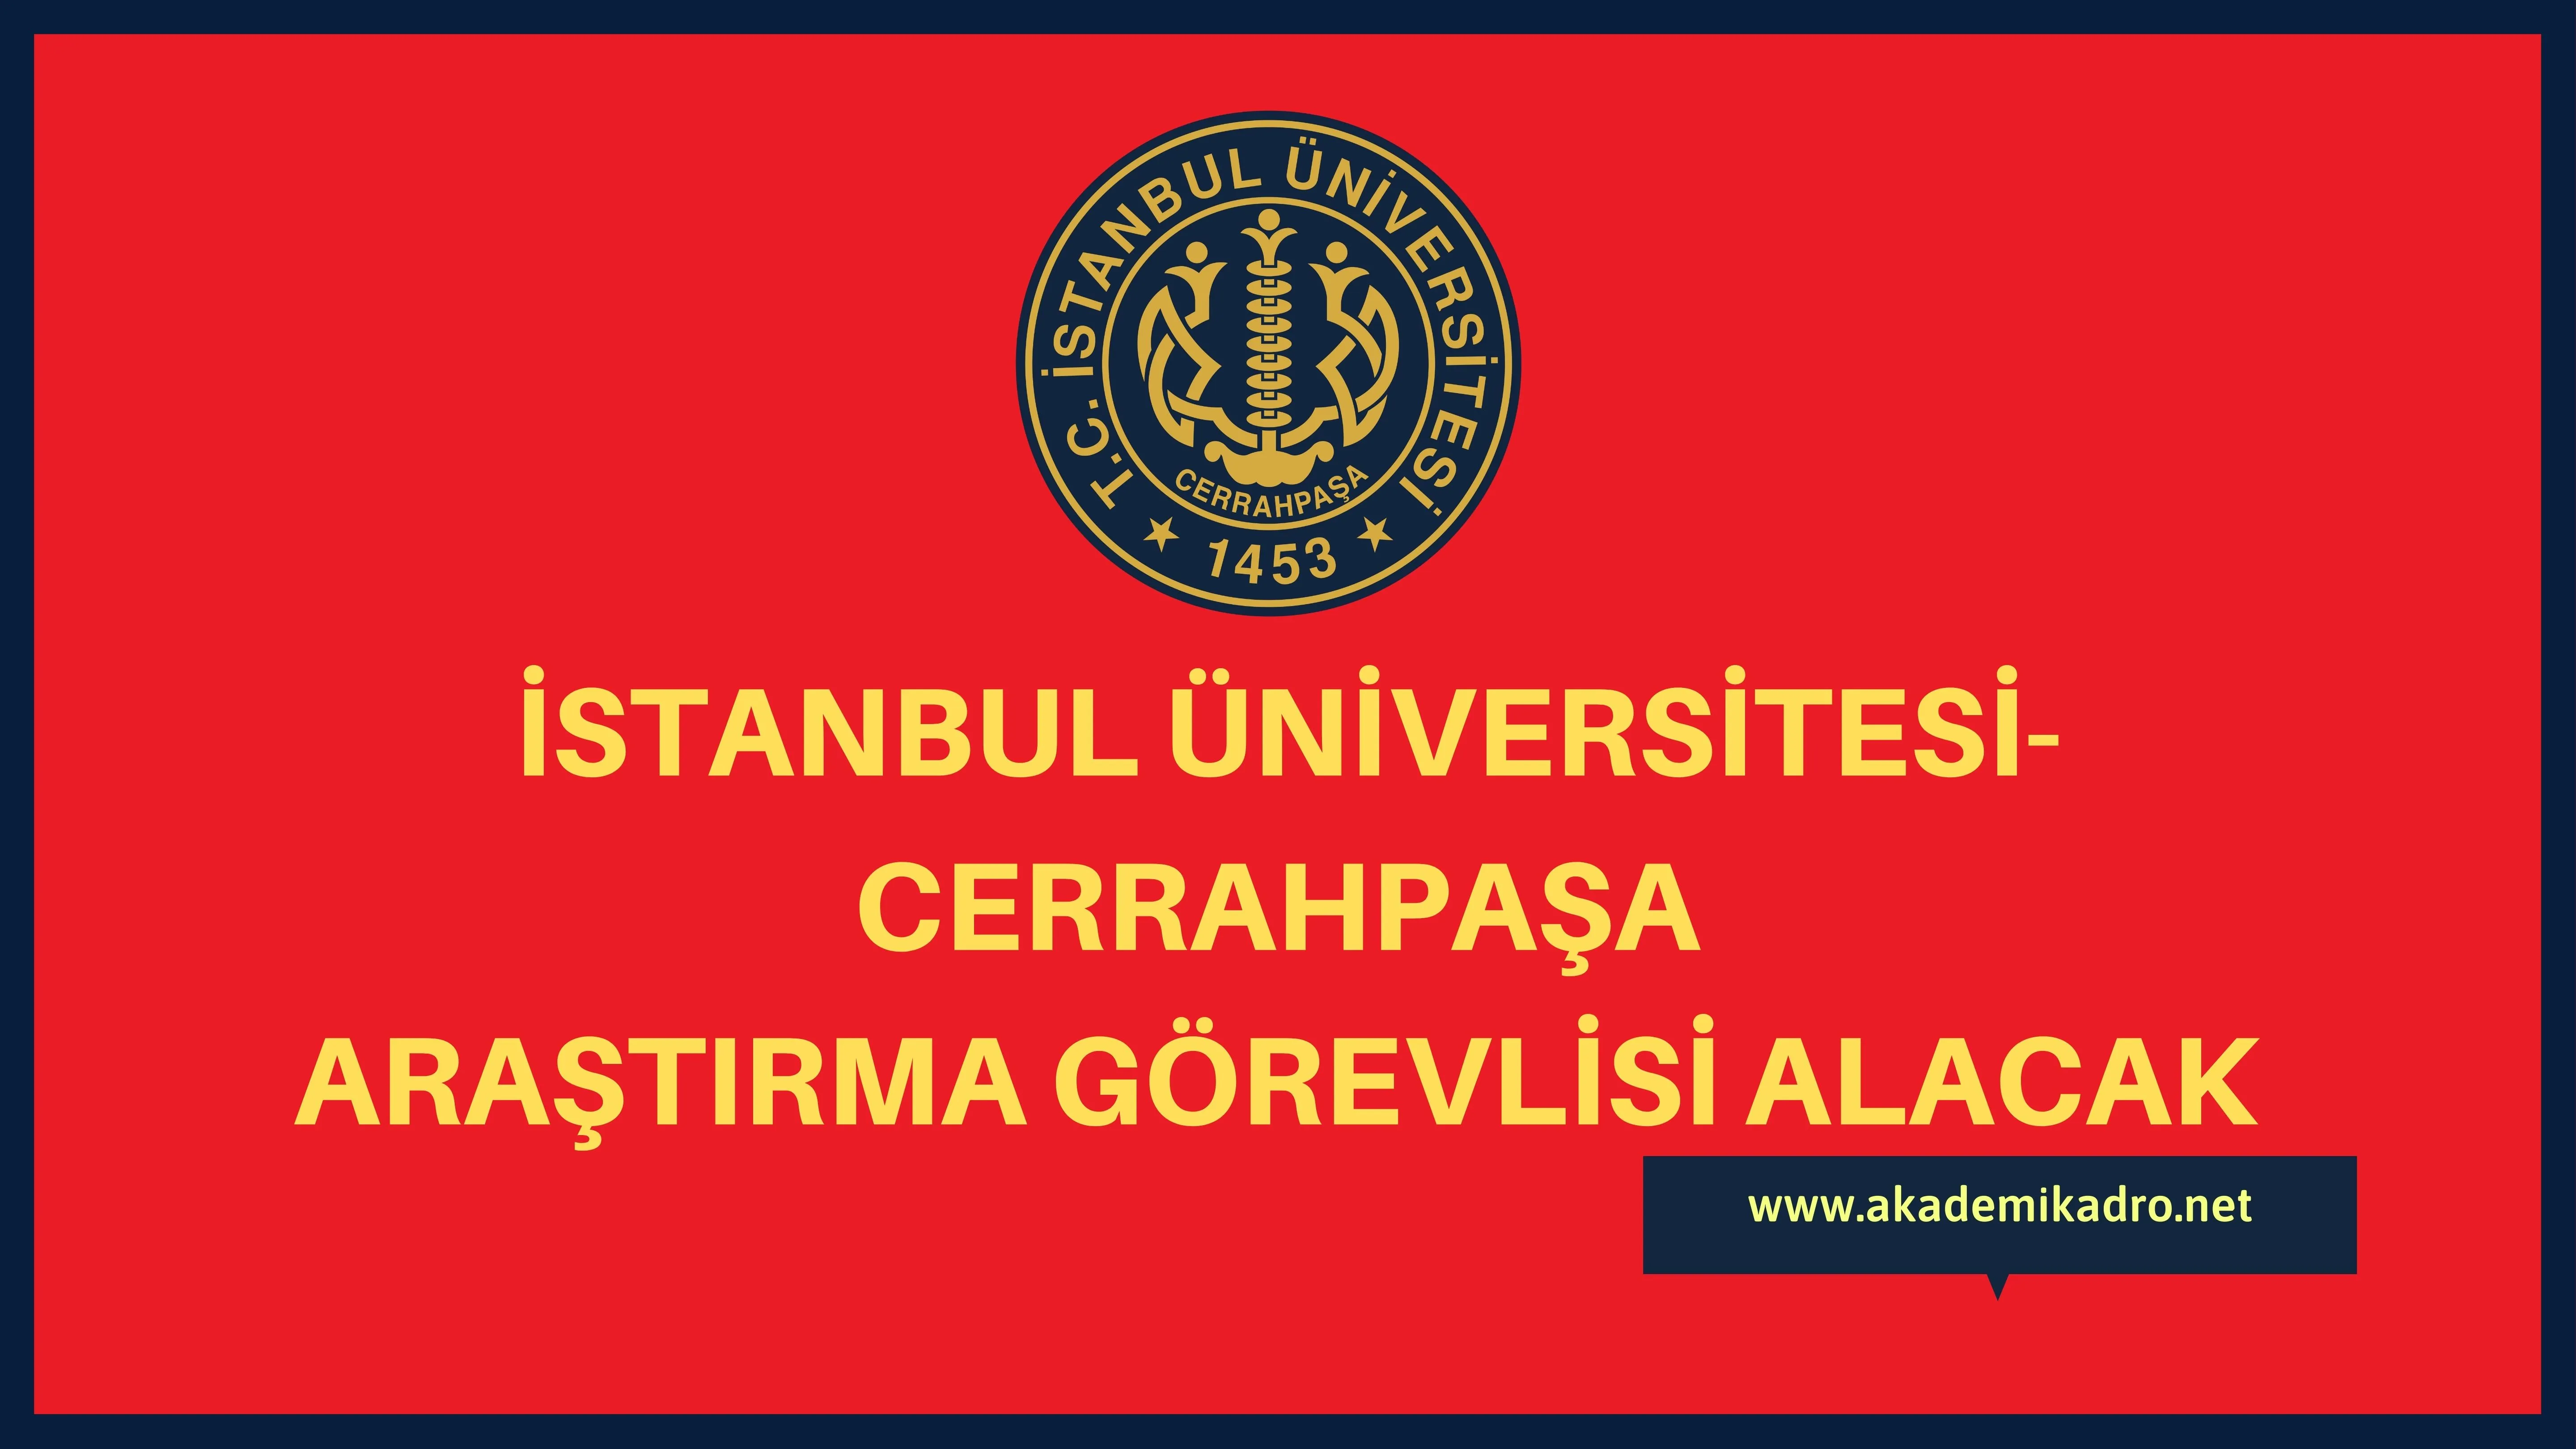 İstanbul Üniversitesi-Cerrahpaşa birçok alandan 14 Araştırma görevlisi alacak.